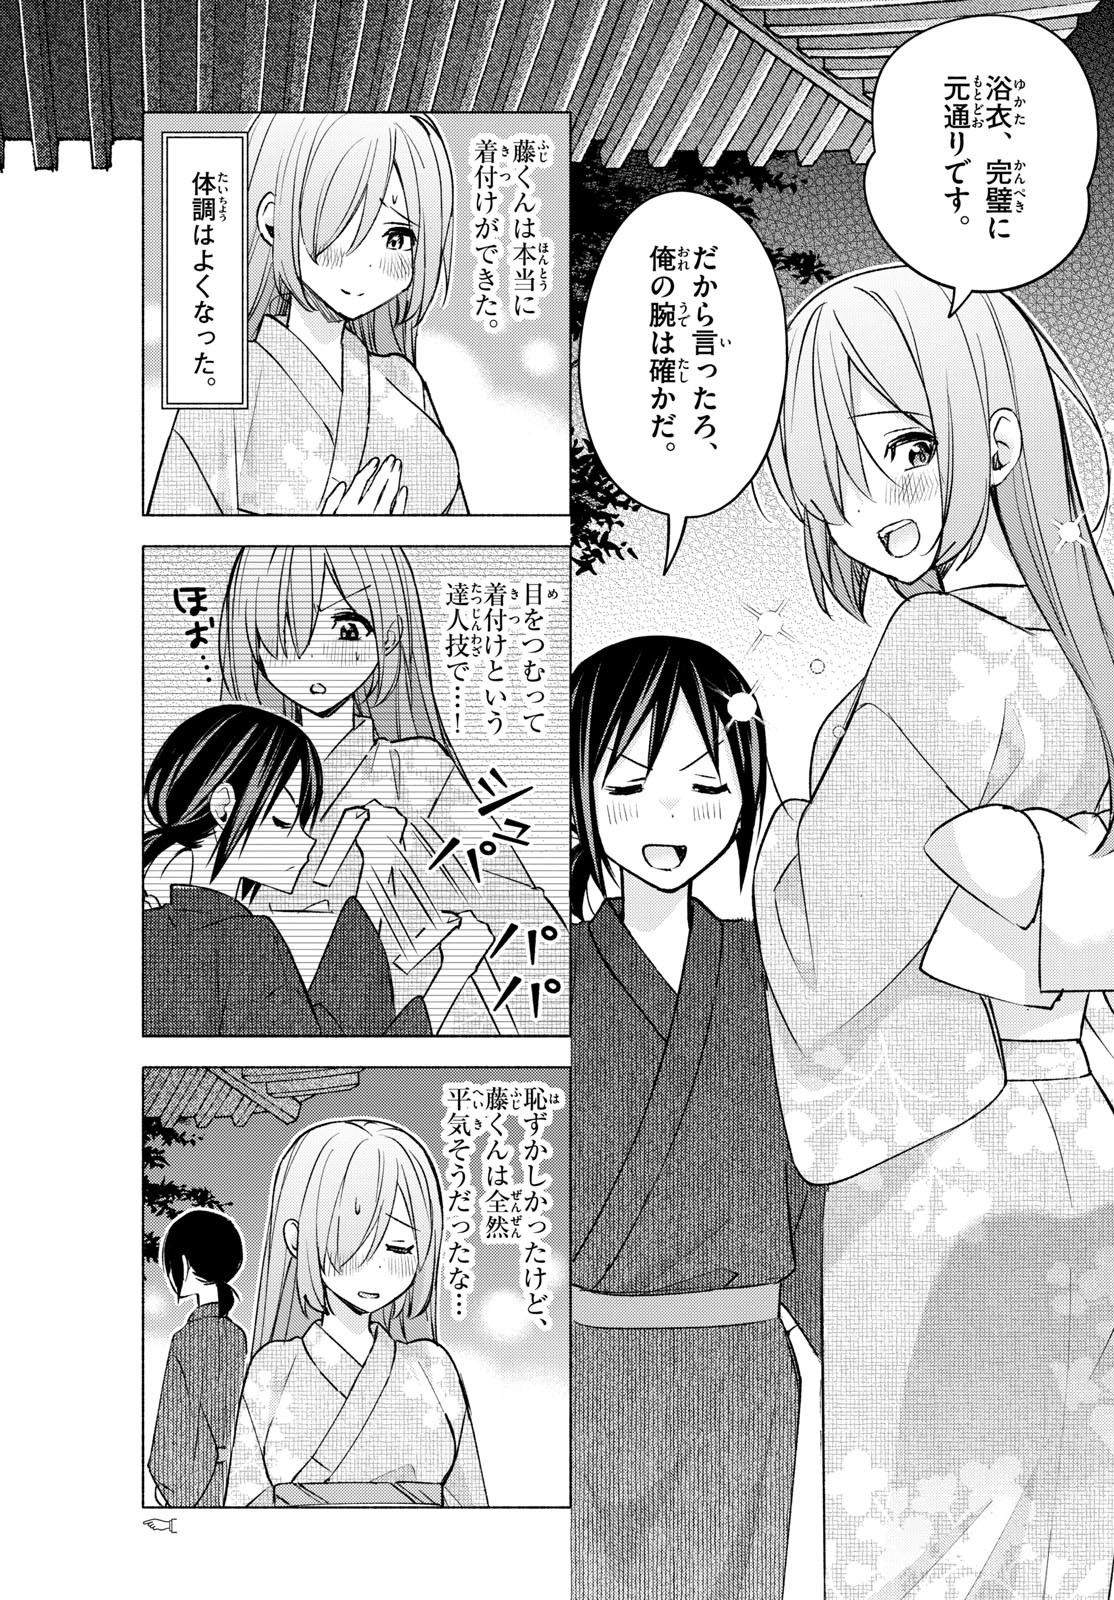 Kimi to Warui Koto ga Shitai - Chapter 050 - Page 3